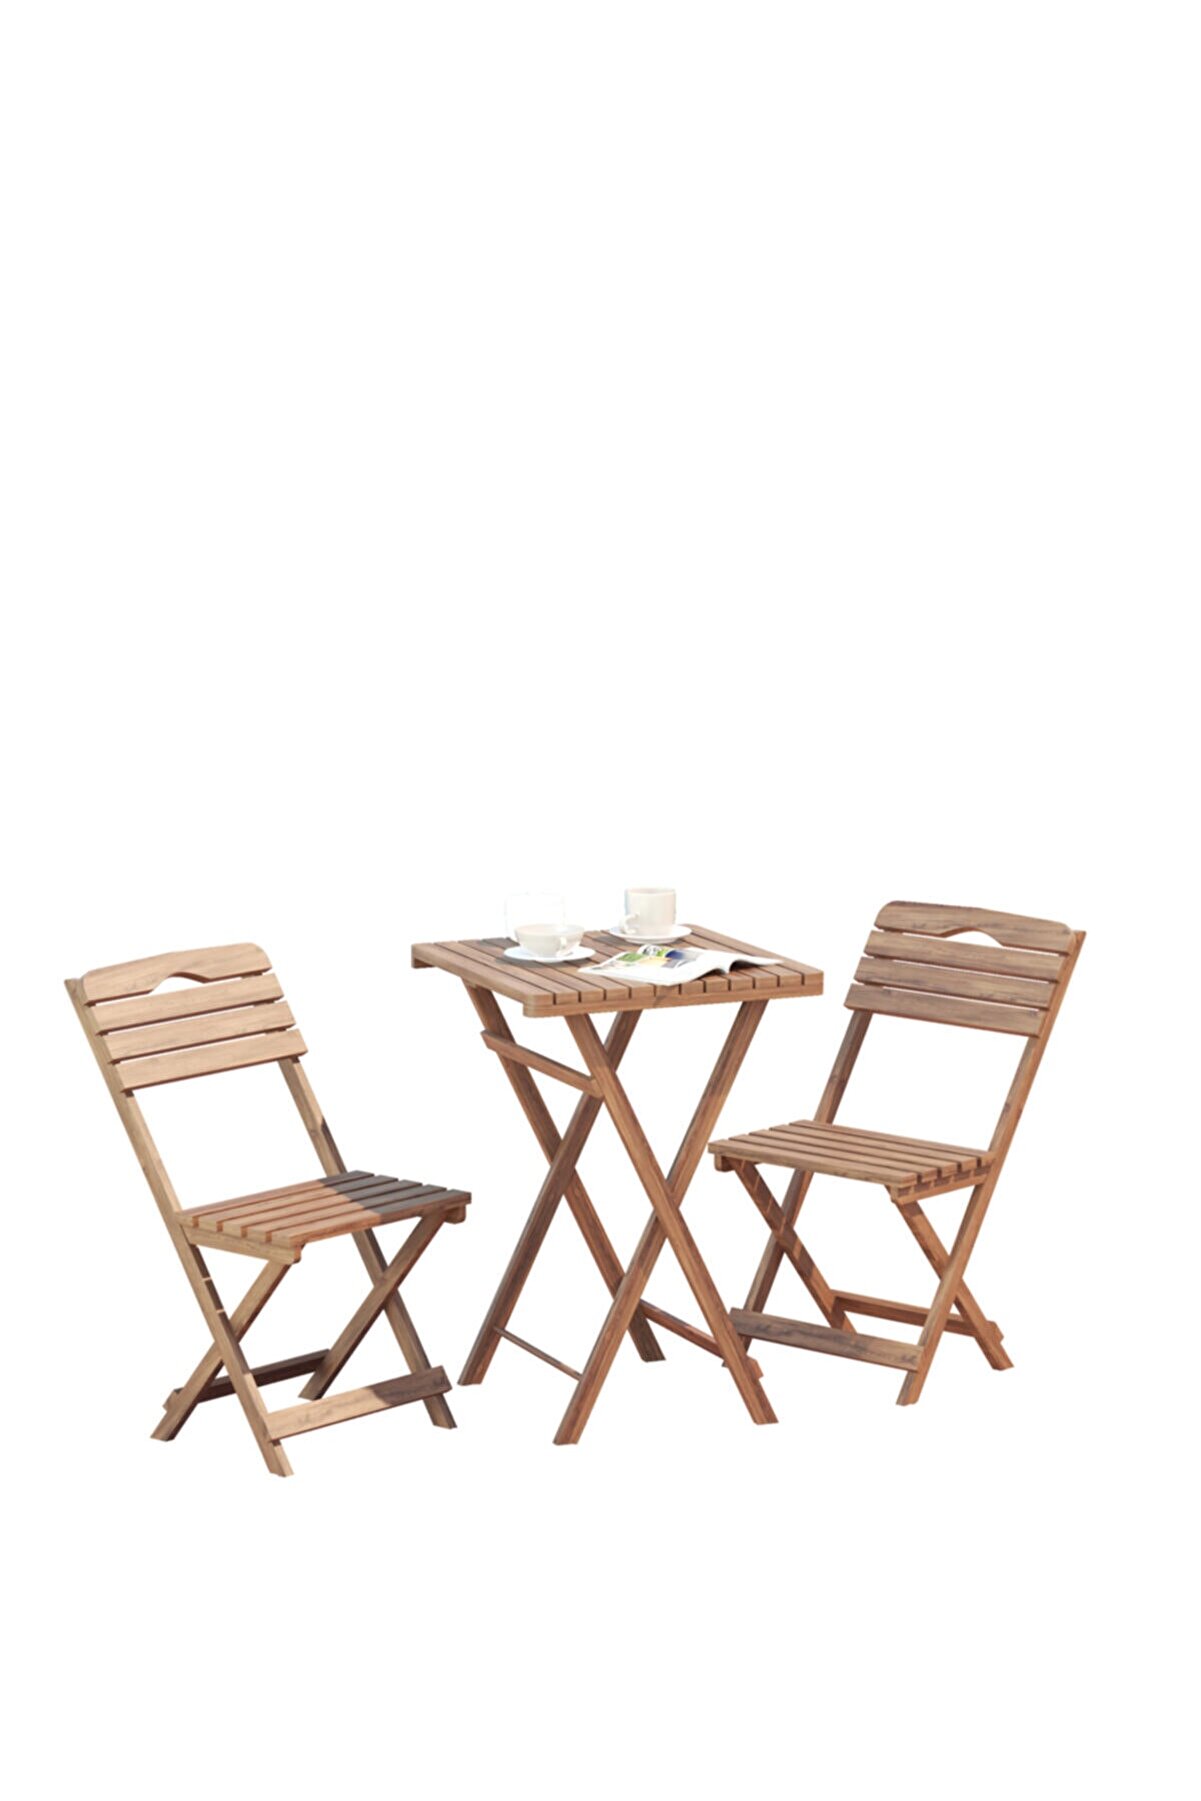 BAHTAŞ Balkon - Bahçe 3'lü Katlanabilir Bistro Set 2 Sandalye 1 Bahçe Masası